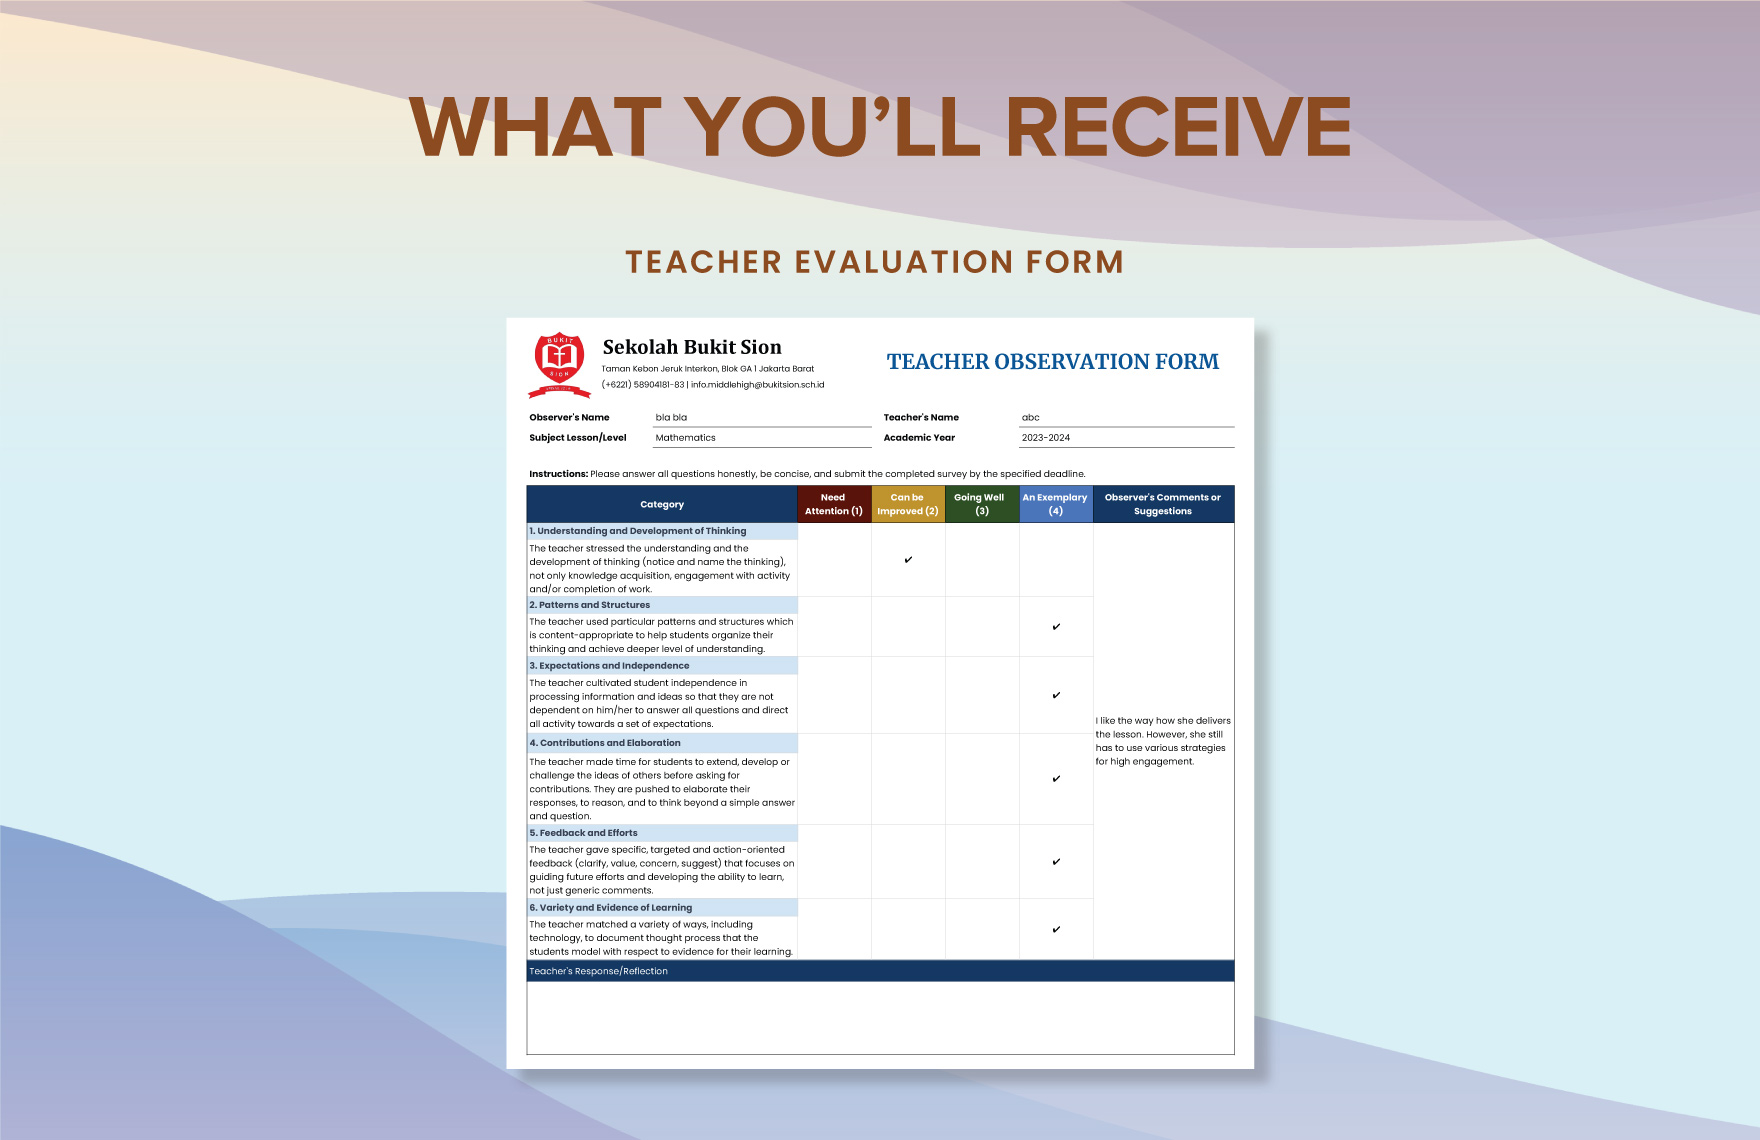 Teacher Evaluation Form Template